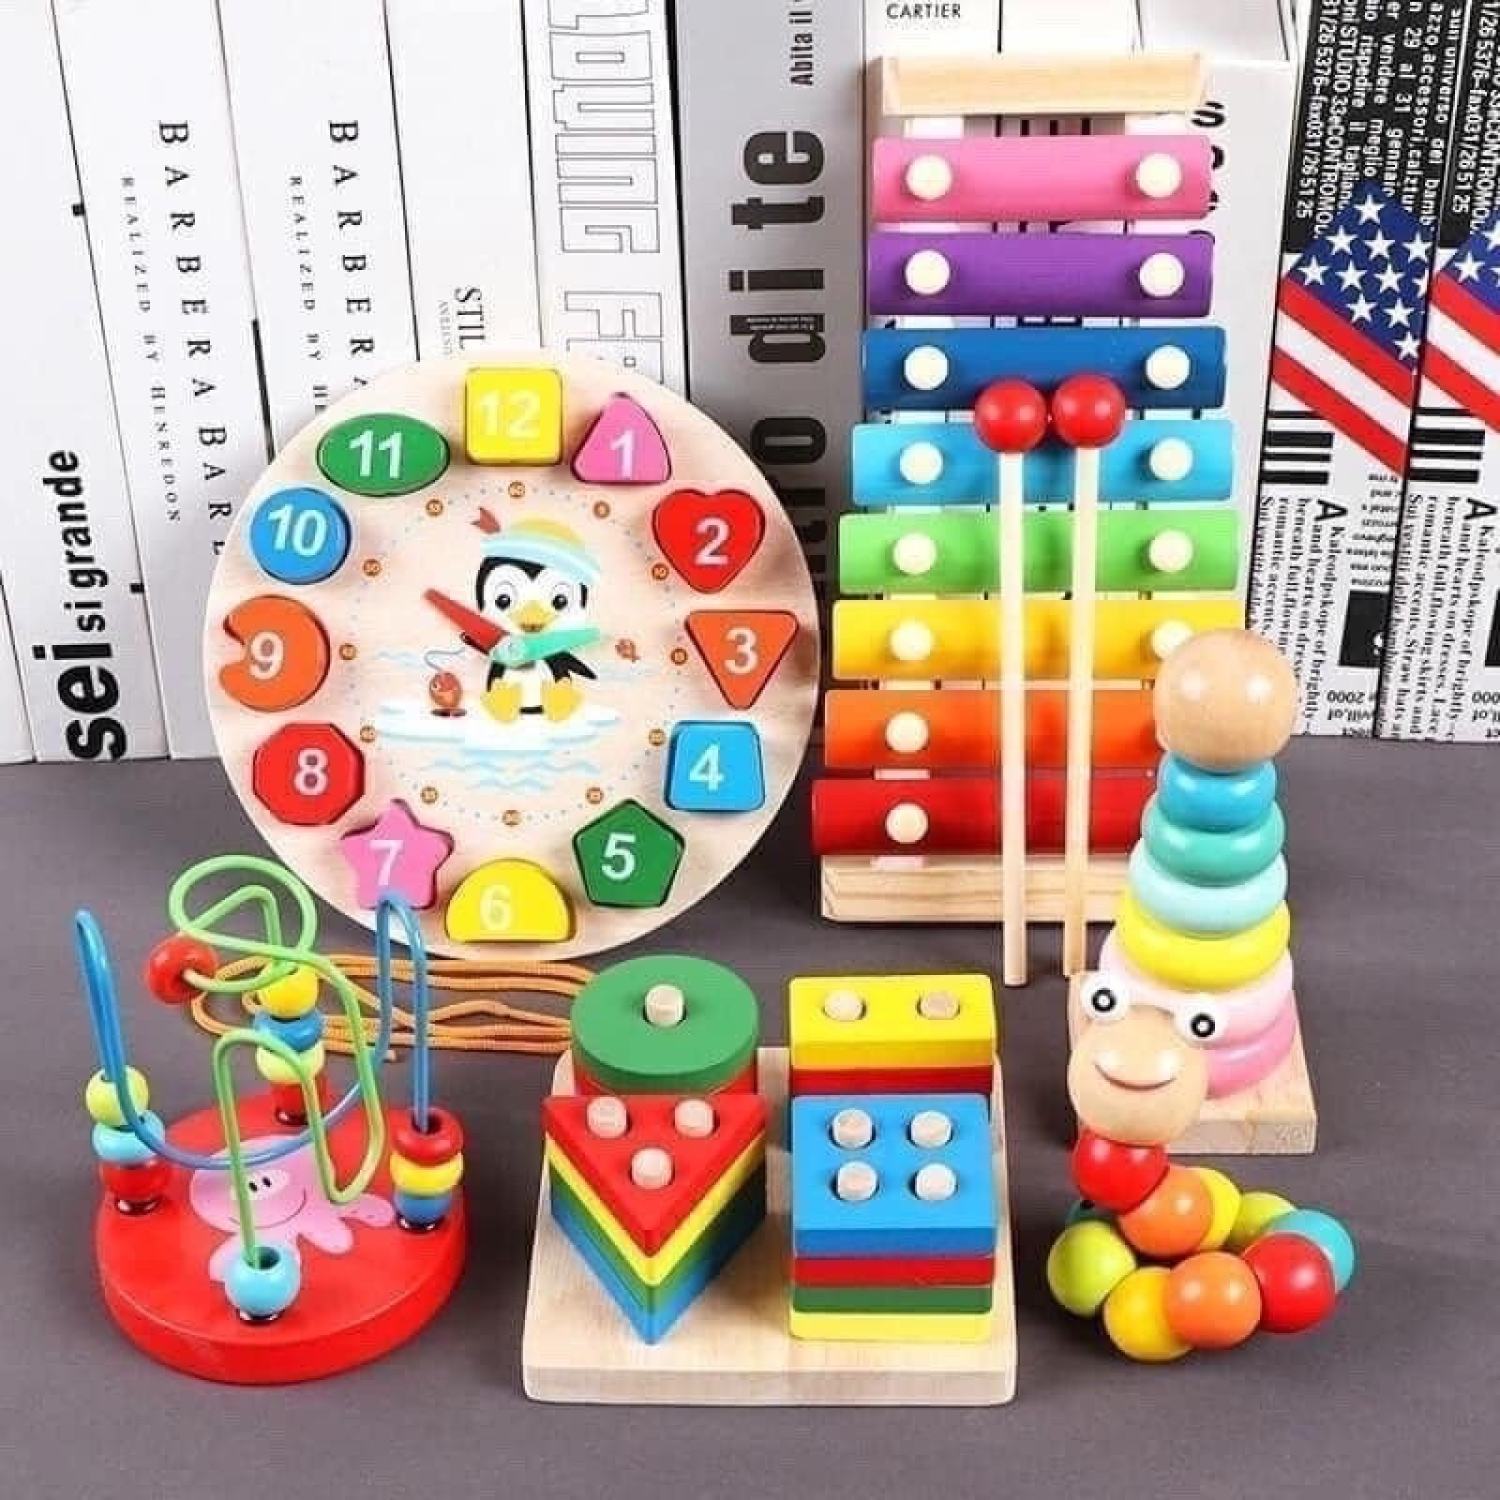 Combo 6 món đồ chơi gỗ thông minh baostore triển tư duy, trí tuệ cho bé - ảnh sản phẩm 1